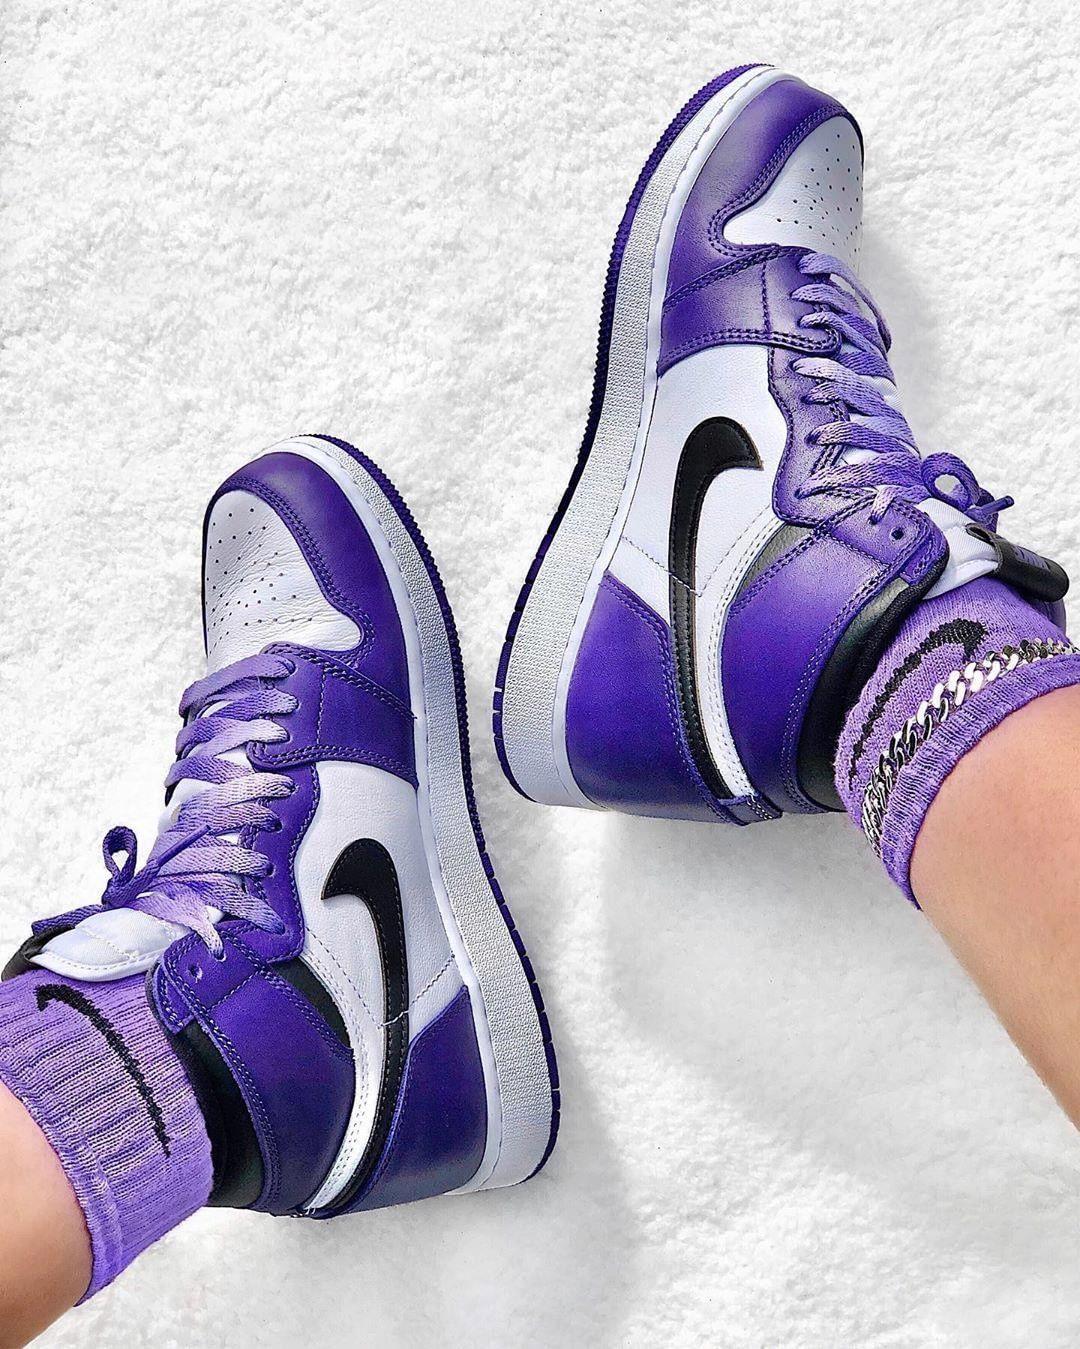 Purple Jordan Wallpapers - Top Những Hình Ảnh Đẹp